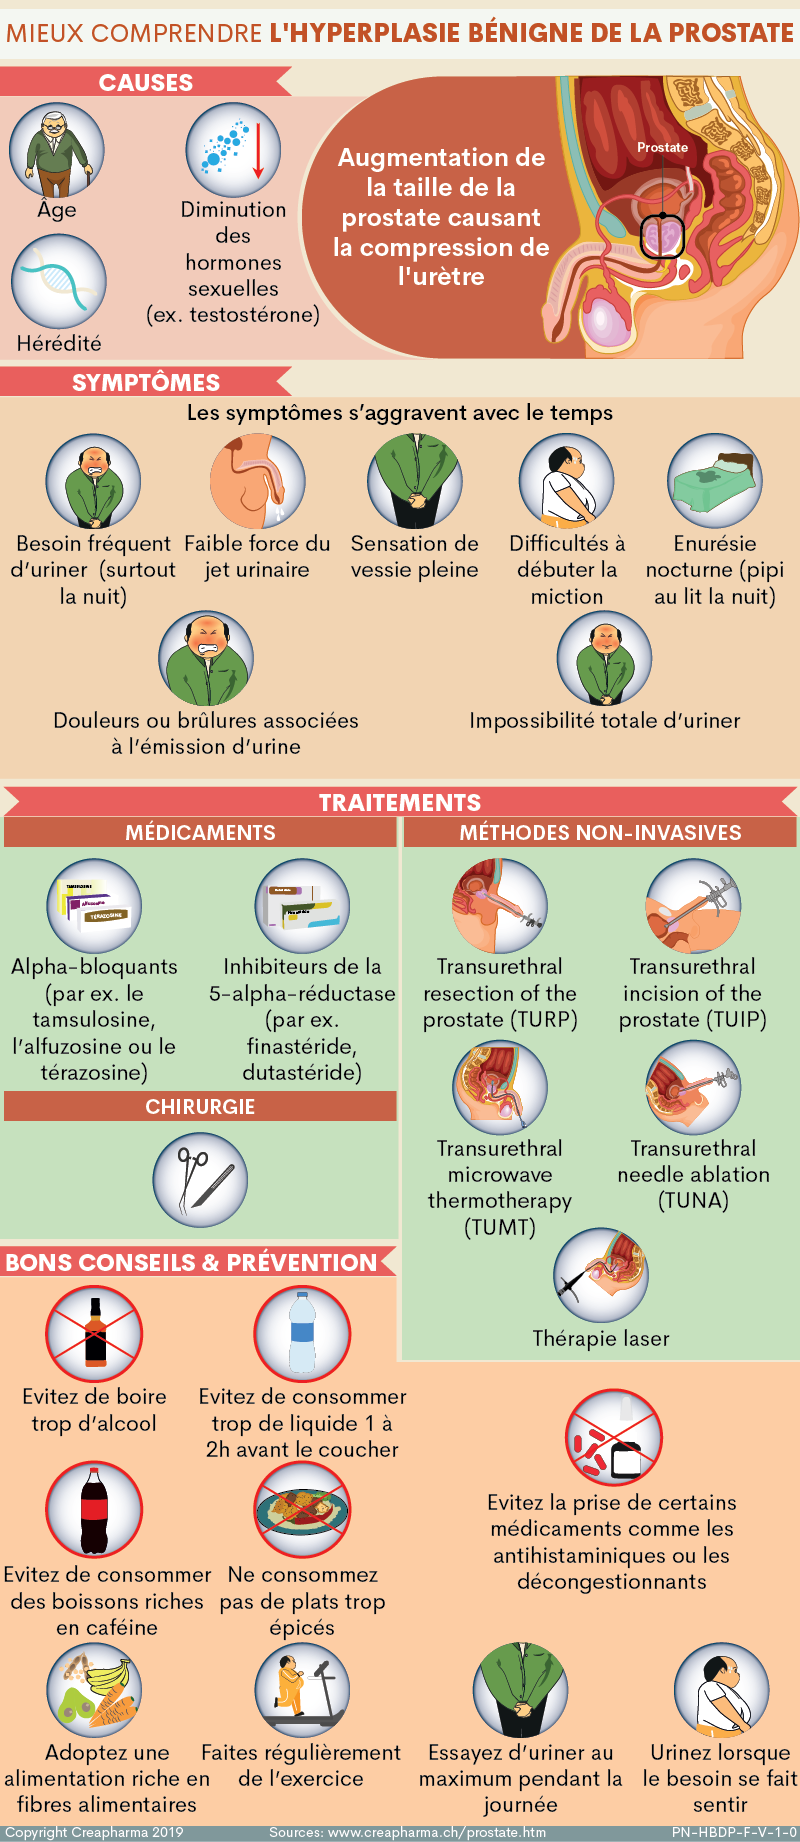 médecin ou à votre pharmacien - Traduction en roumain - exemples français | Reverso Context